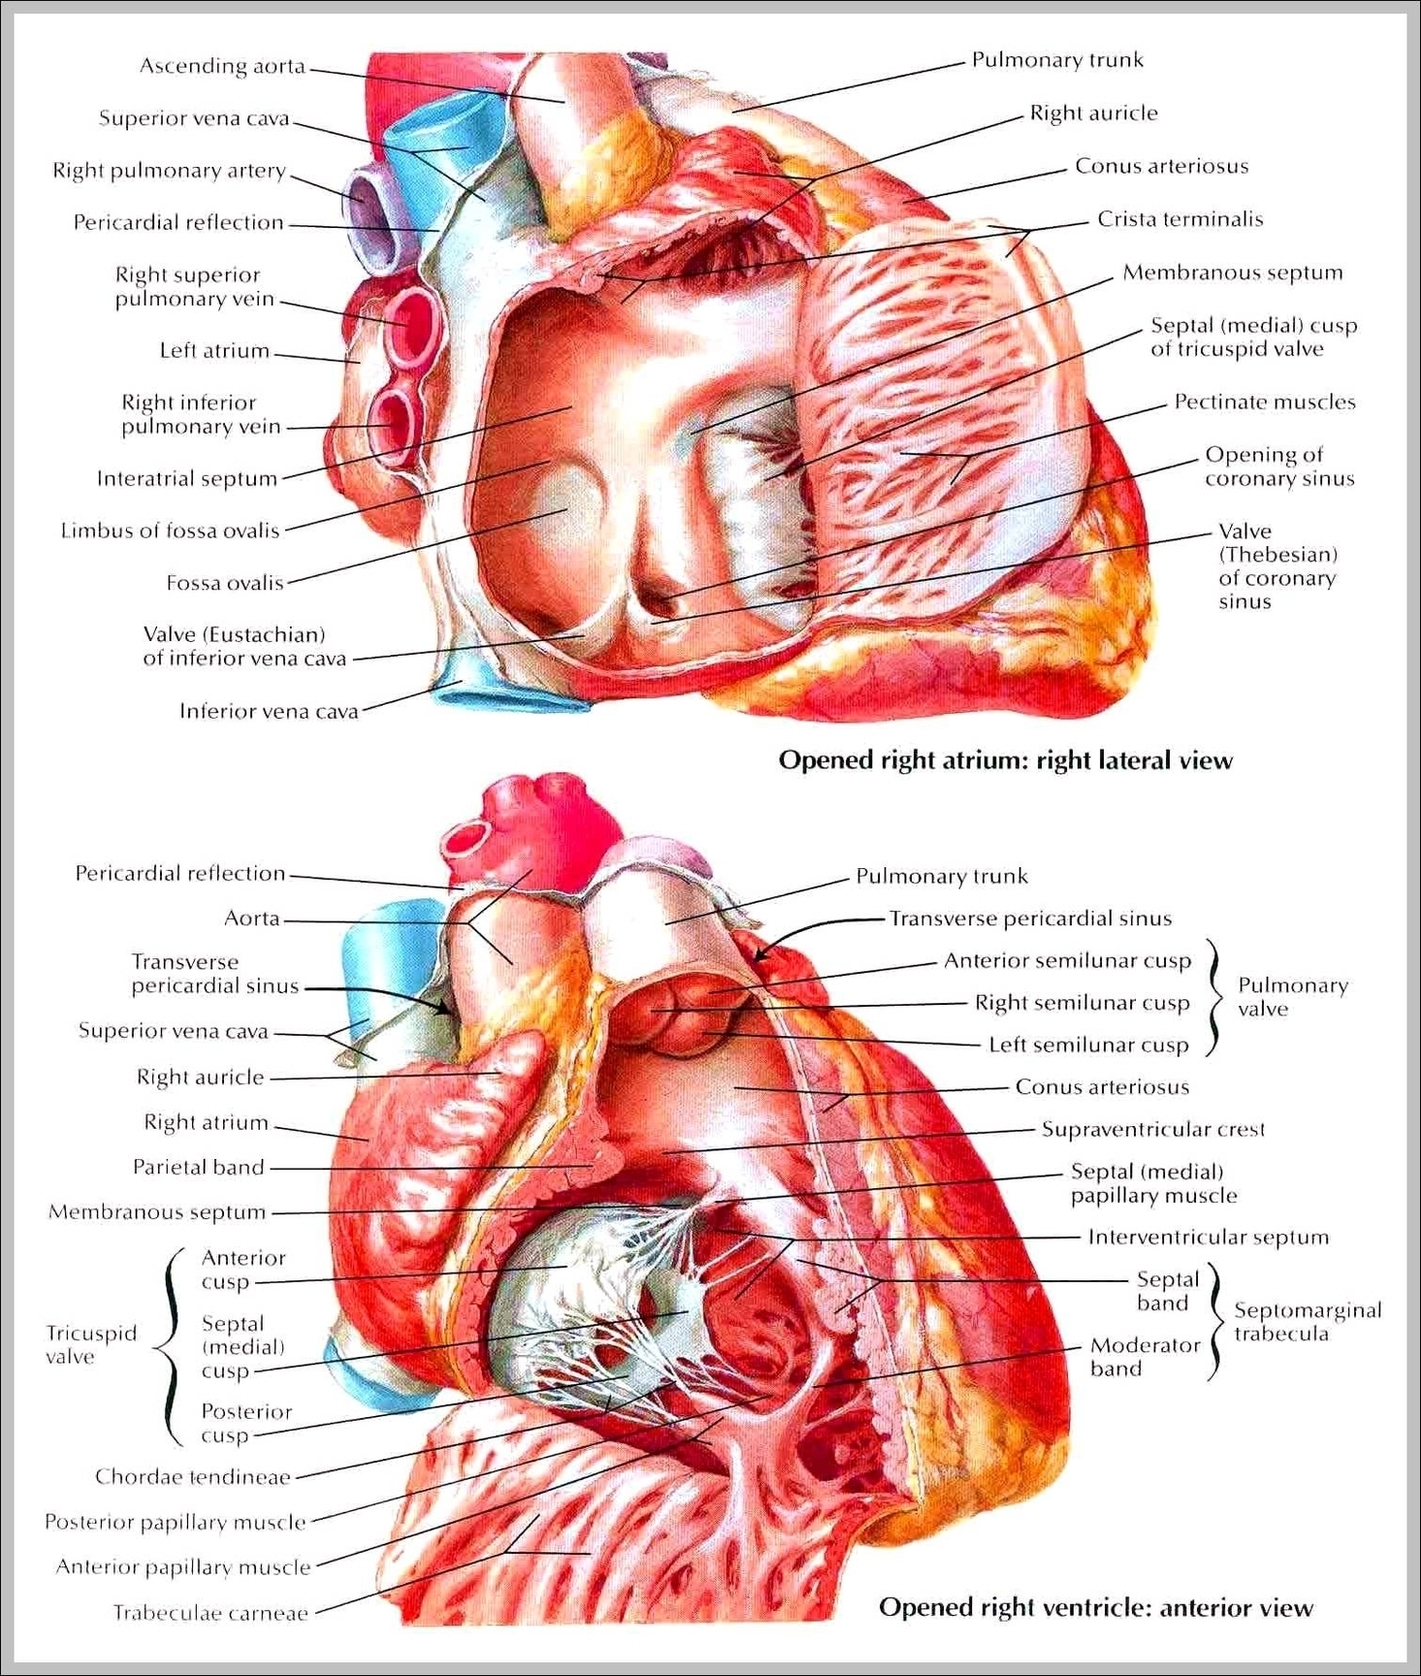 Musculature Anatomy Chart Image